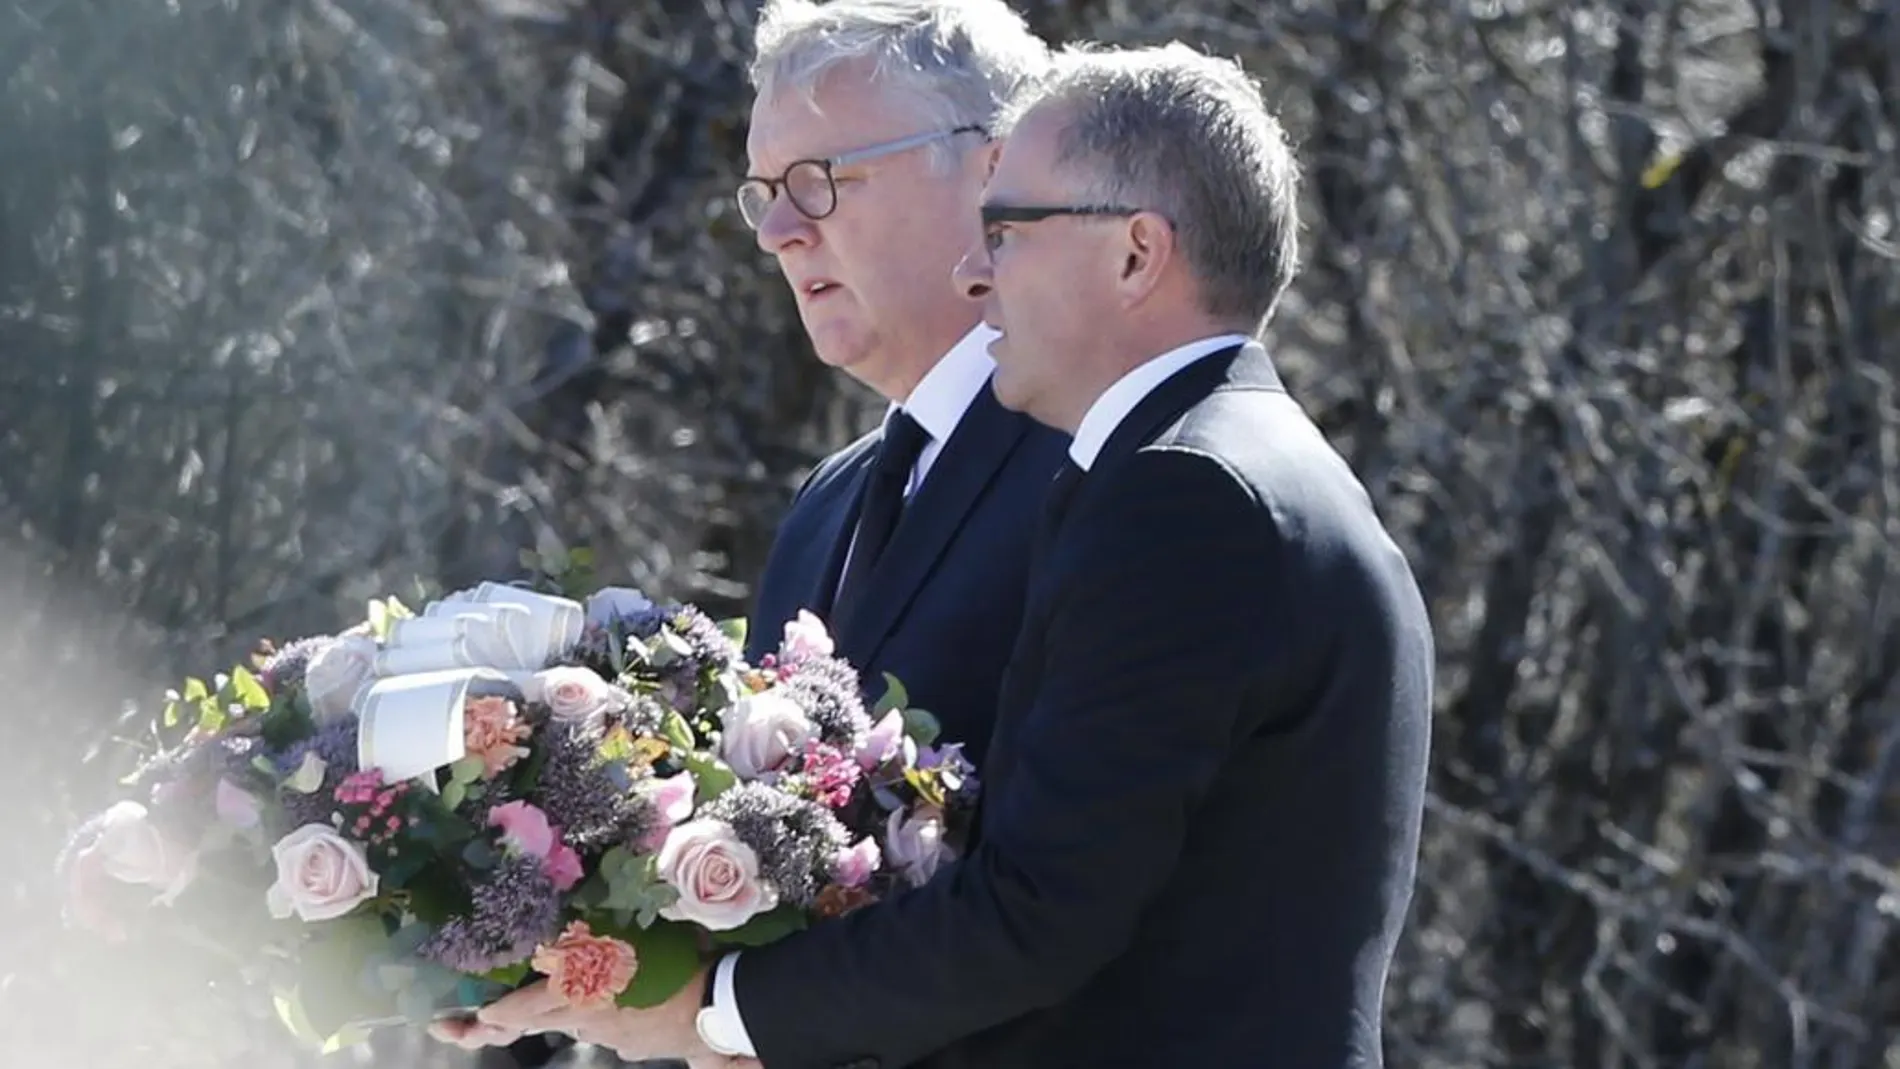 Los presidente de Germanwings, Thomas Winkelmann, y Lufthansa, Carsten Spohr, depositan un ramo de flores en el monolito de homenaje a las víctimas